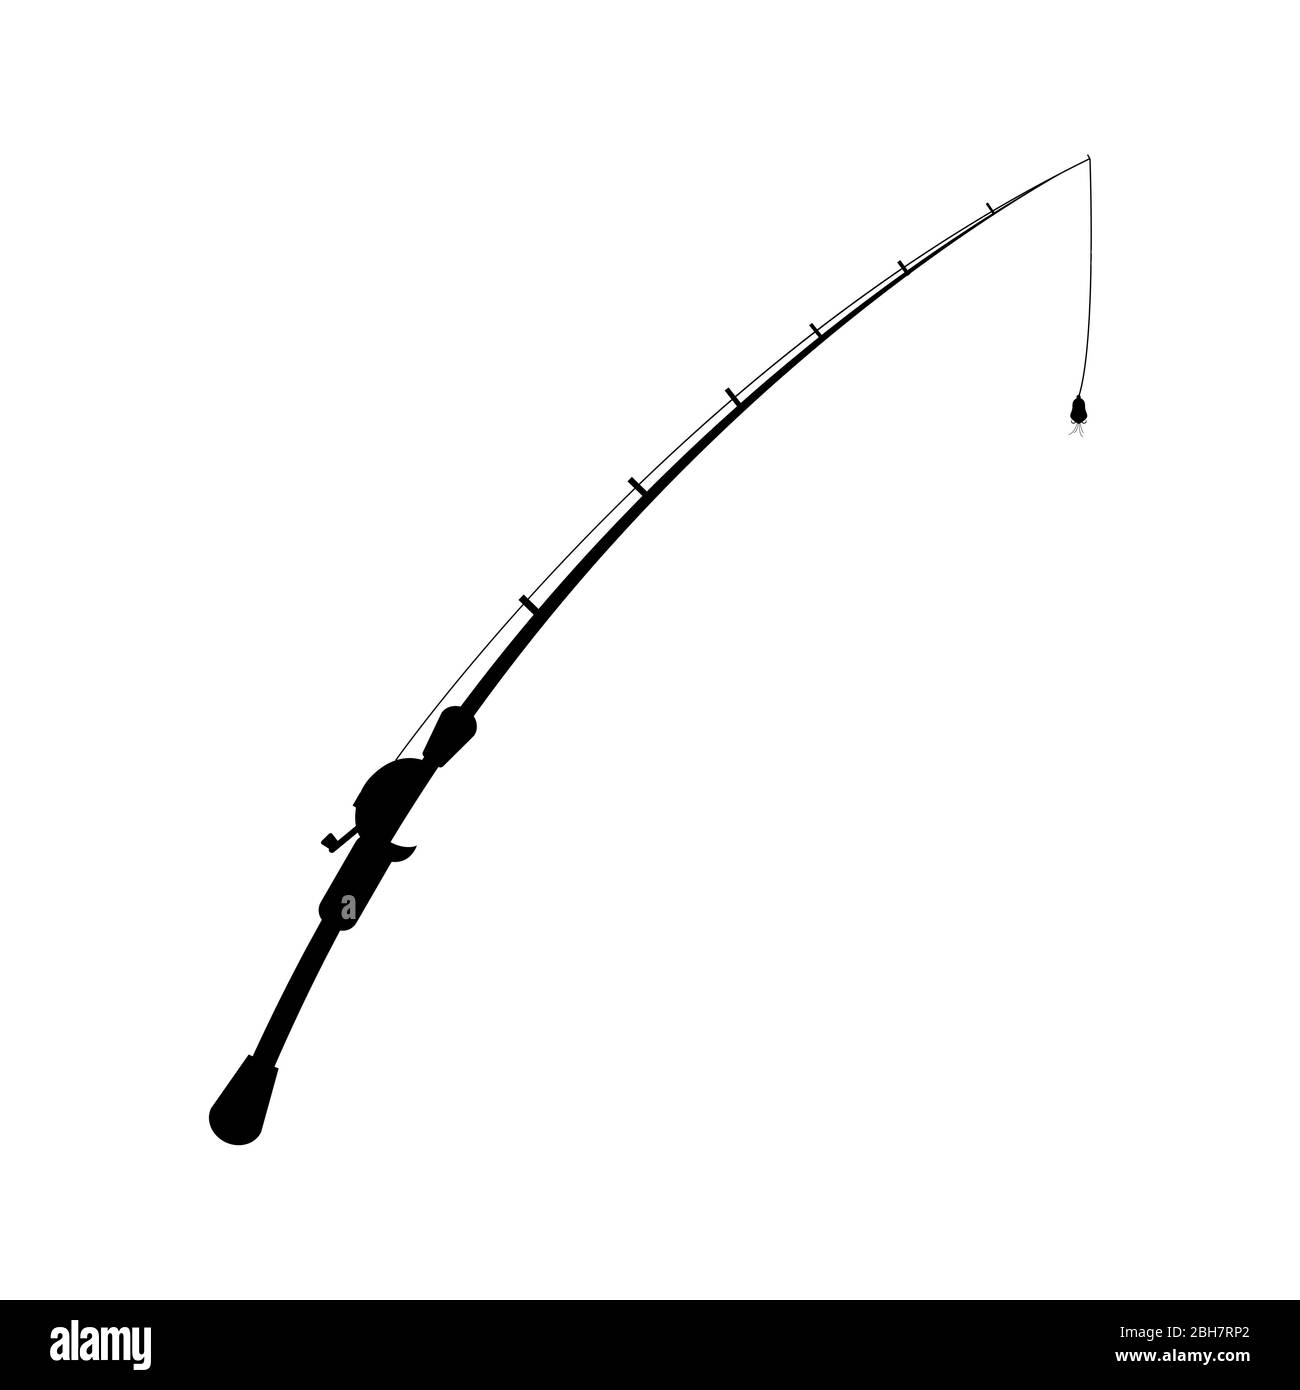 modello grafico di disegno grafico della canna da pesca Immagine e  Vettoriale - Alamy